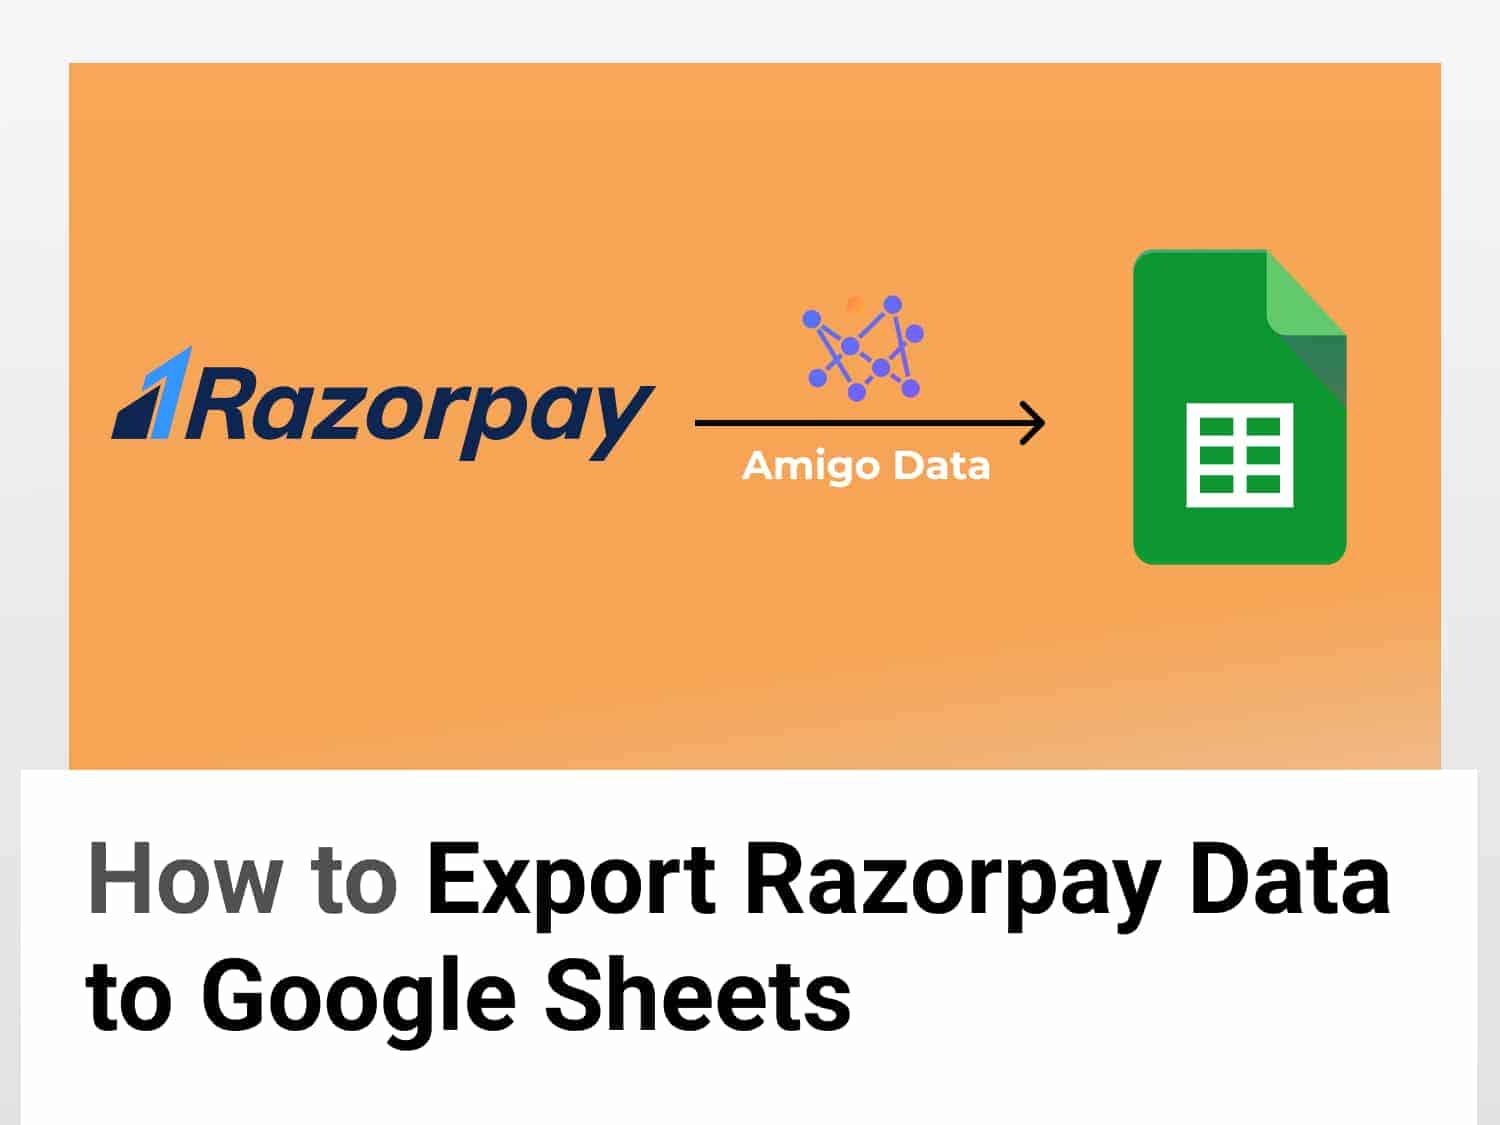 Export Razorpay data to Google Sheets